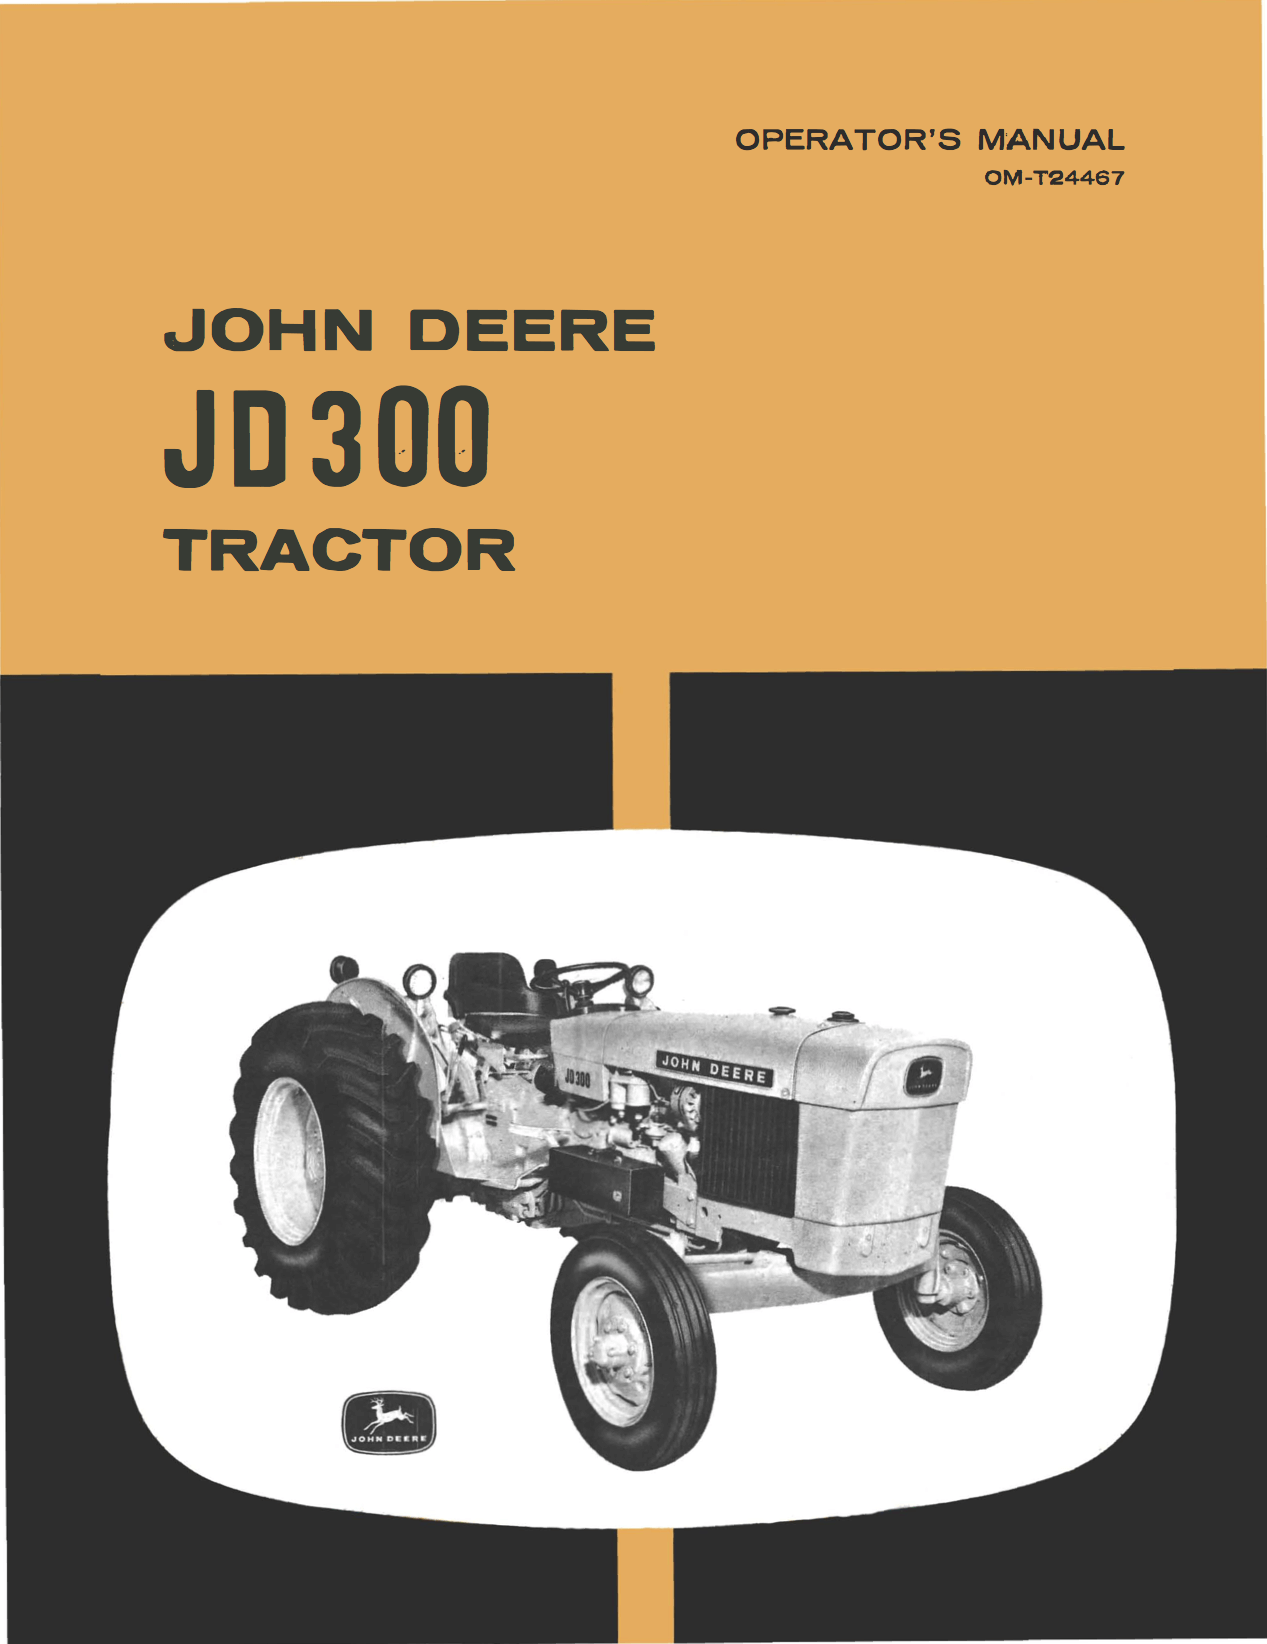 John Deere JD 300 Tractor - Operator's Manual - Ag Manuals - A Provider of Digital Farm Manuals - 1